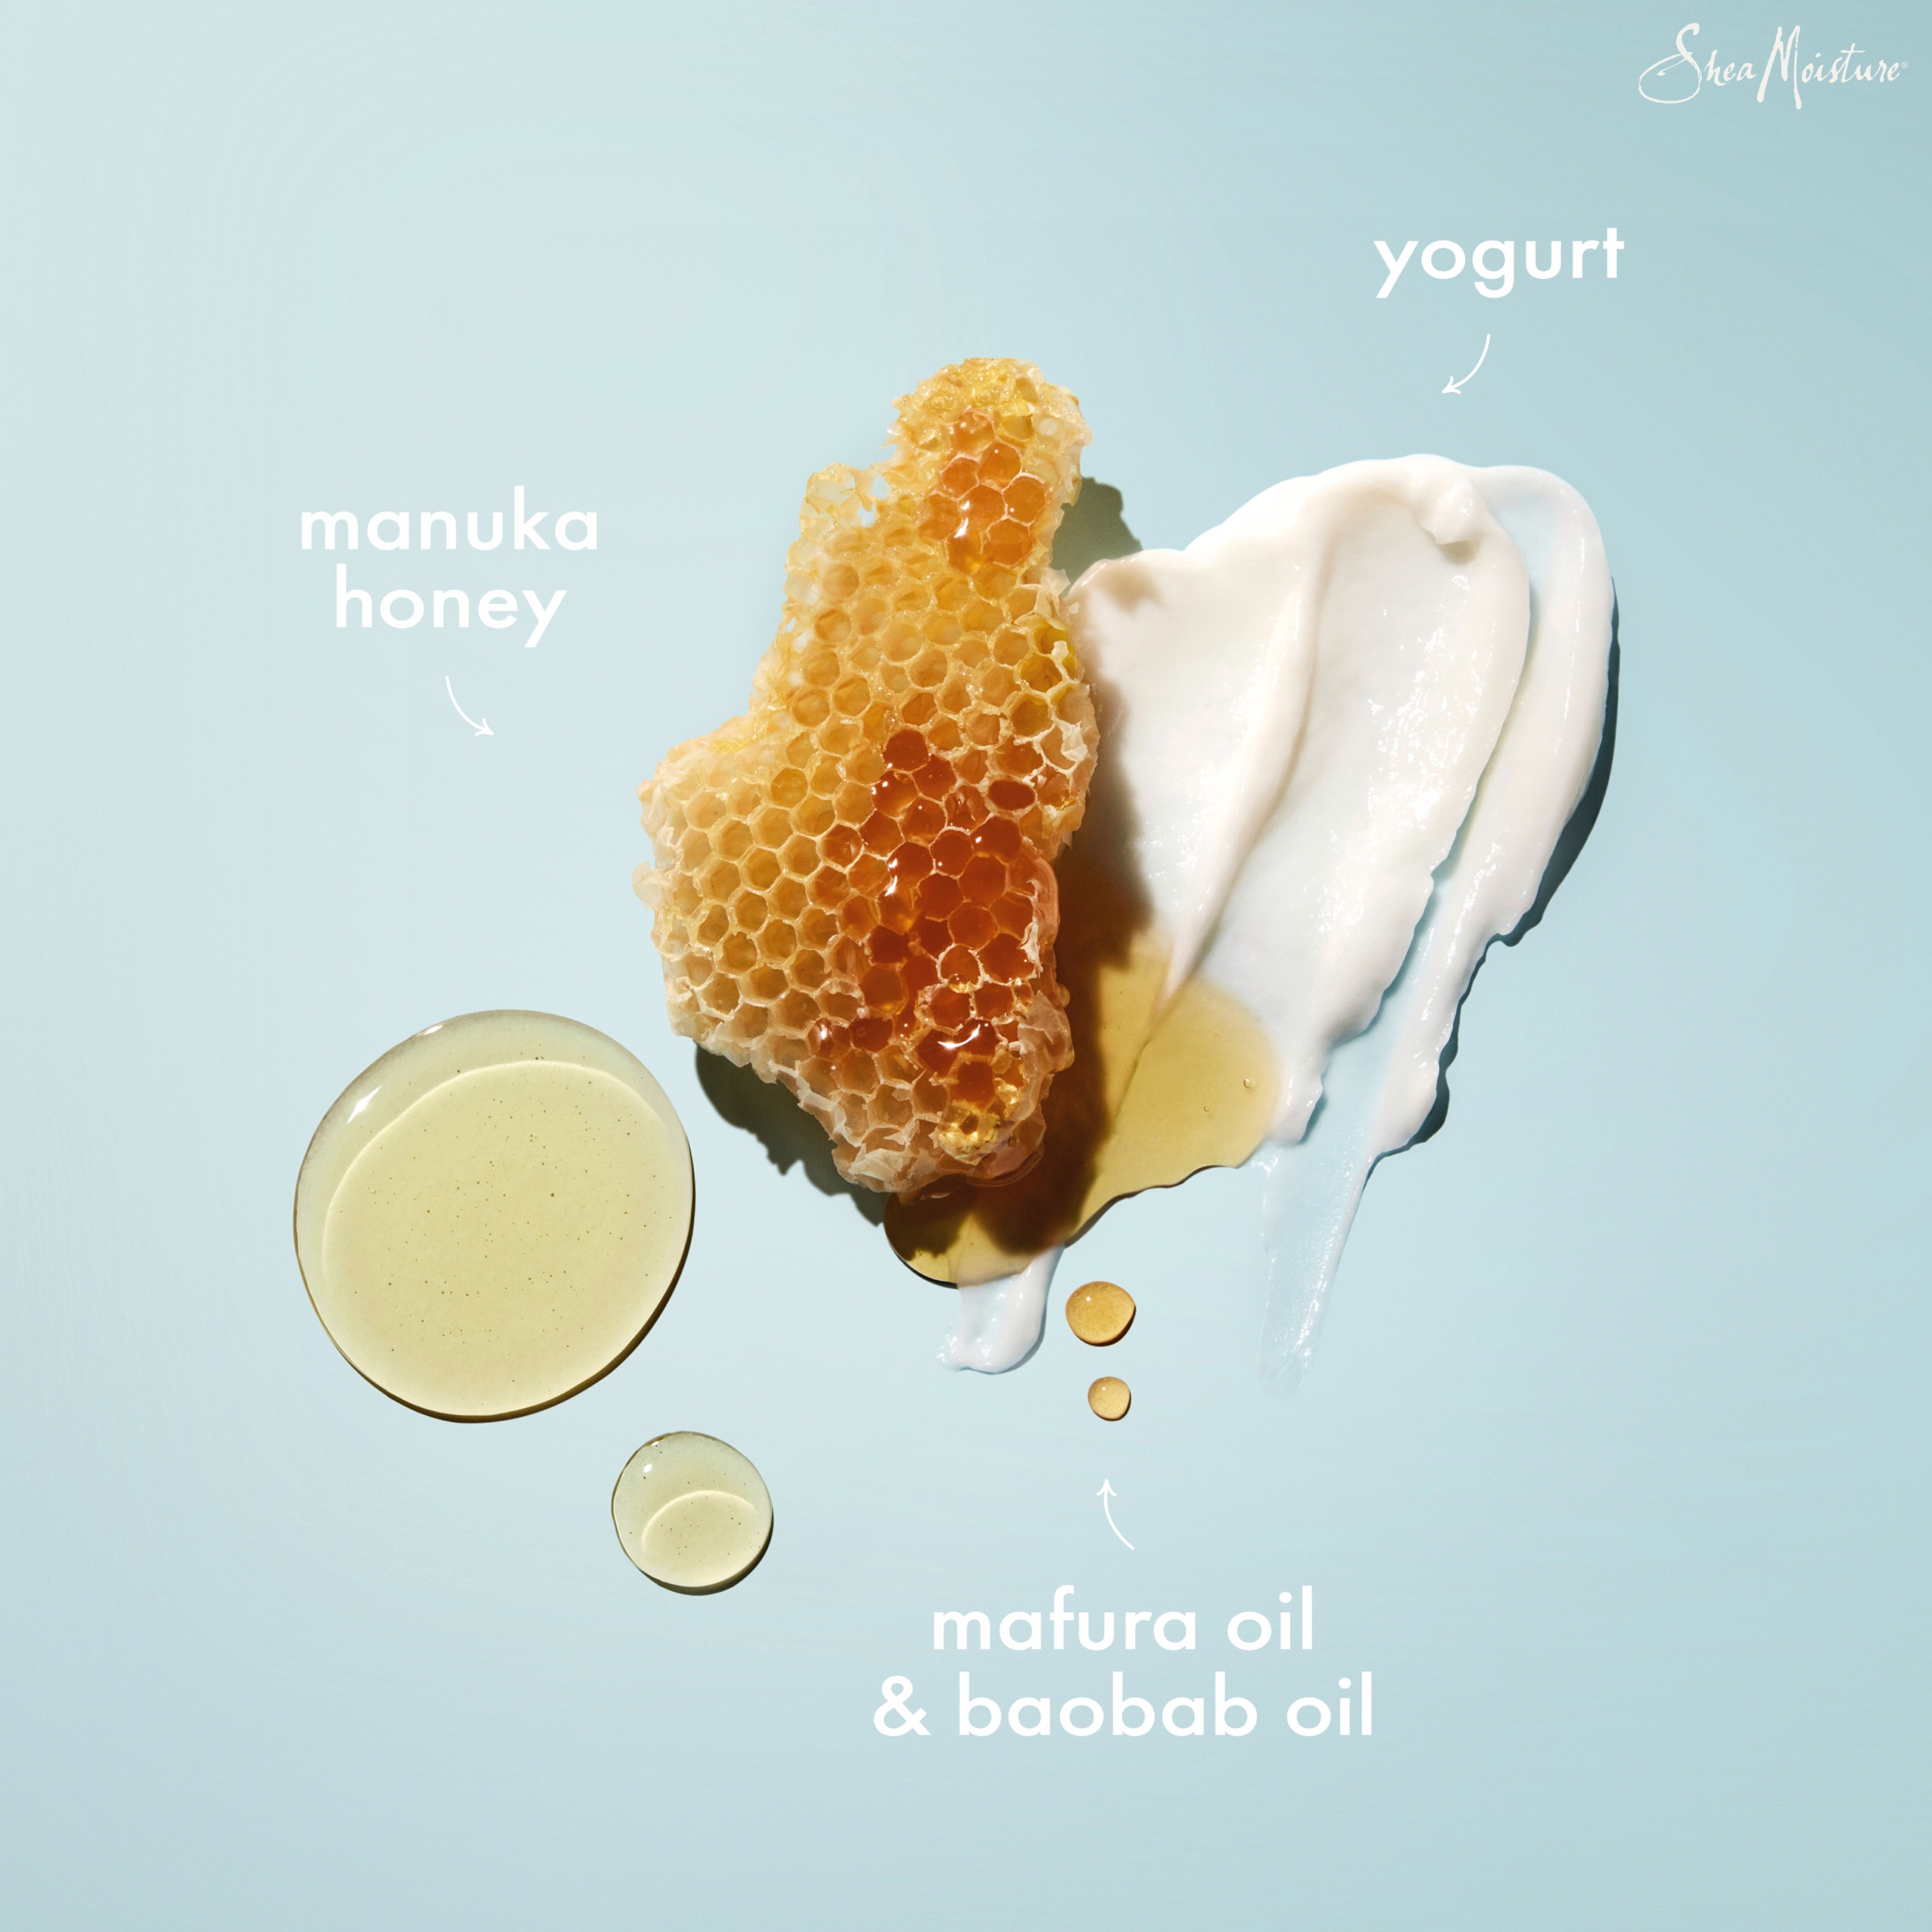 Manuka Honey & Yogurt